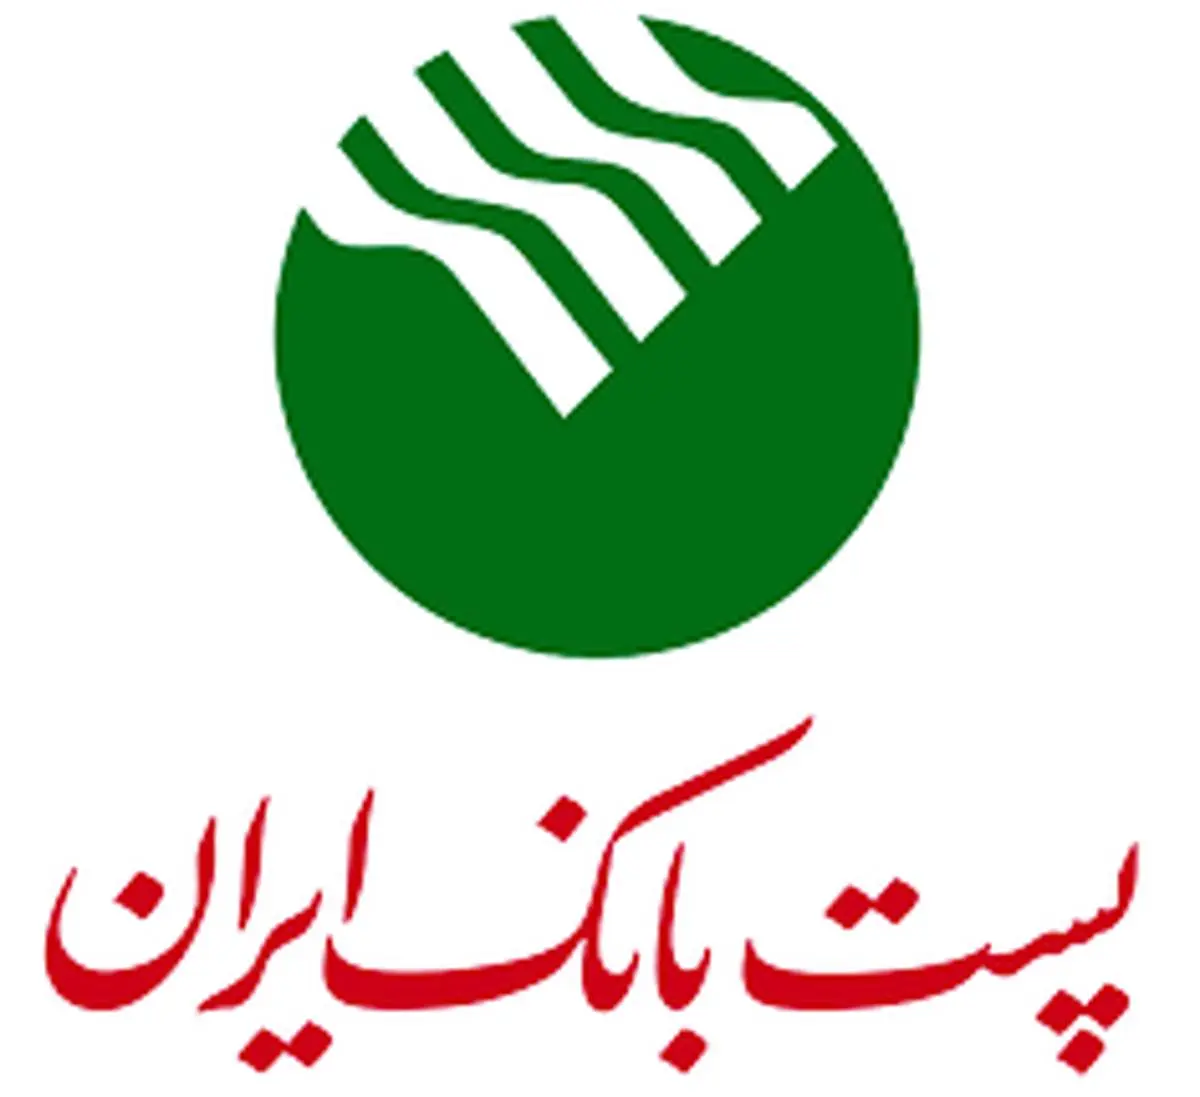 ارائه خدمات متنوع بانکی از طریق سامانه سلام پست بانک ایران